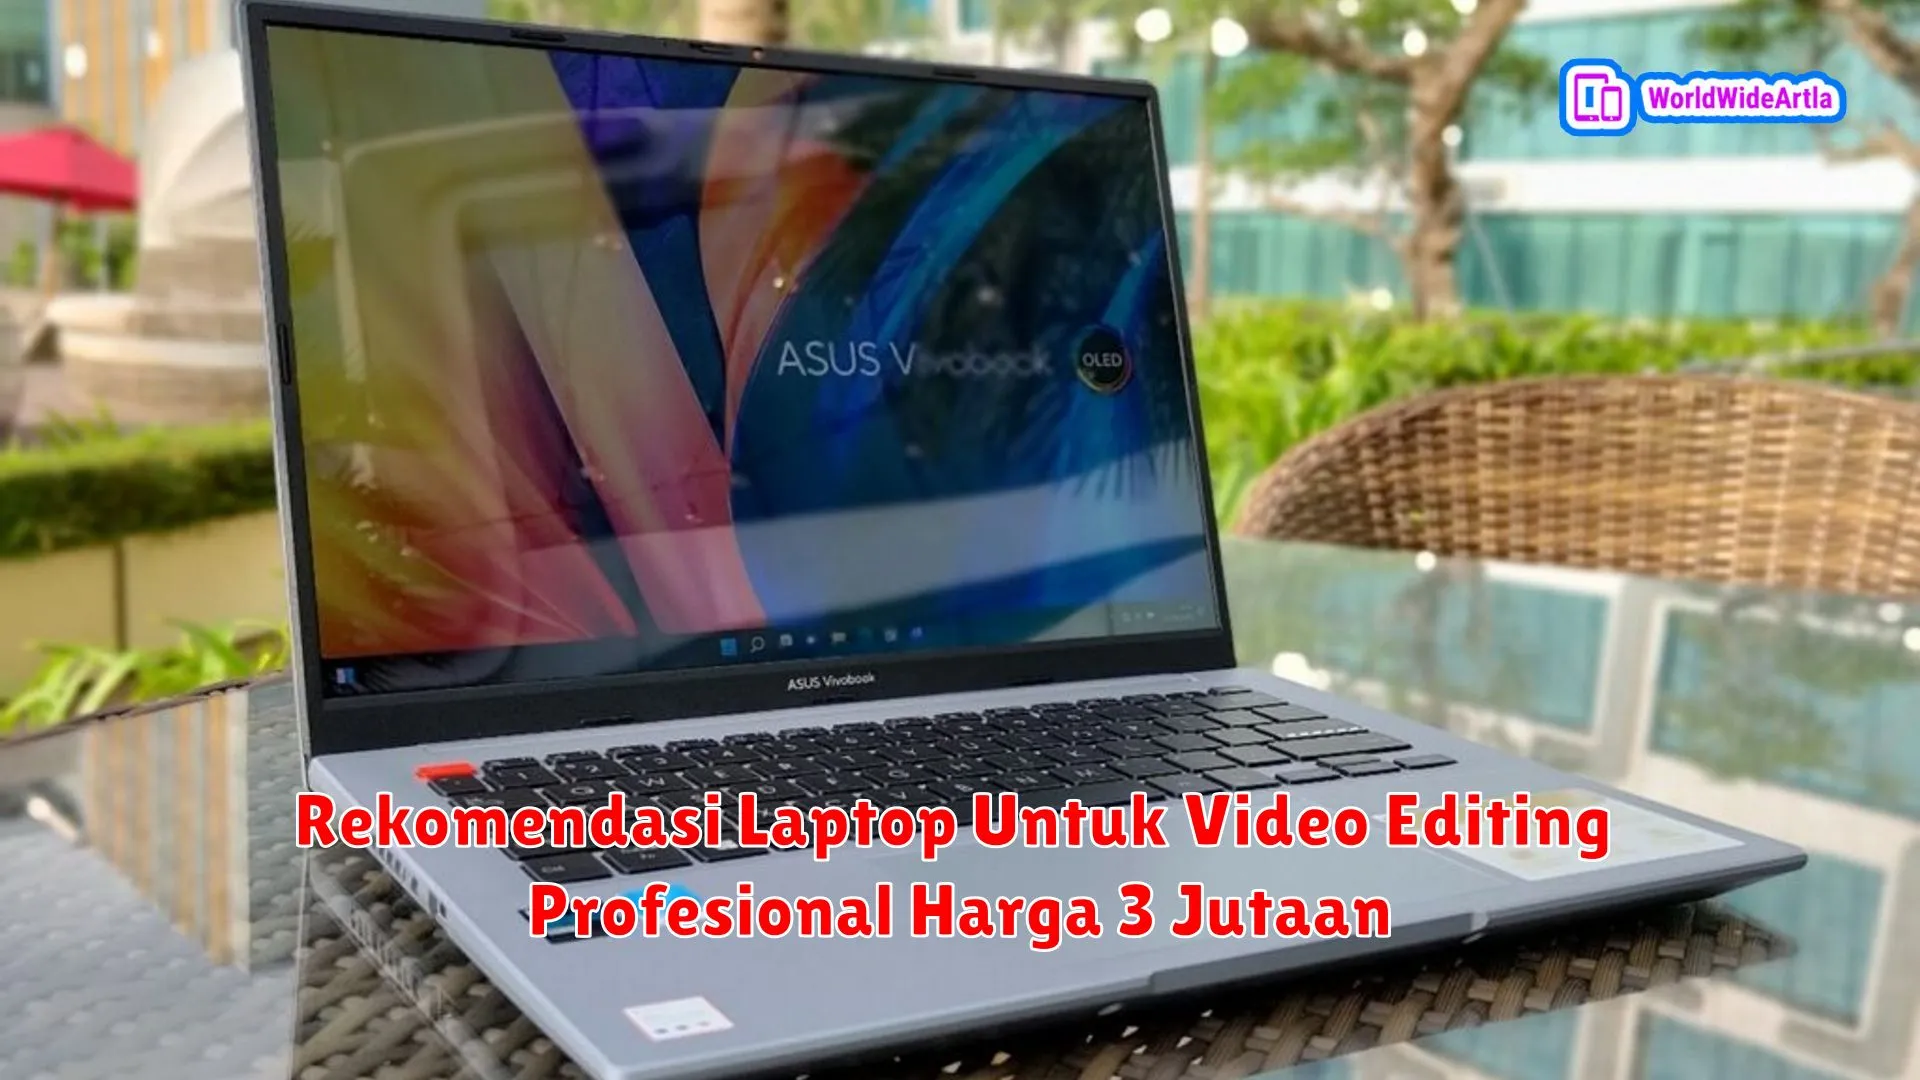 Rekomendasi Laptop Untuk Video Editing Profesional Harga 3 Jutaan